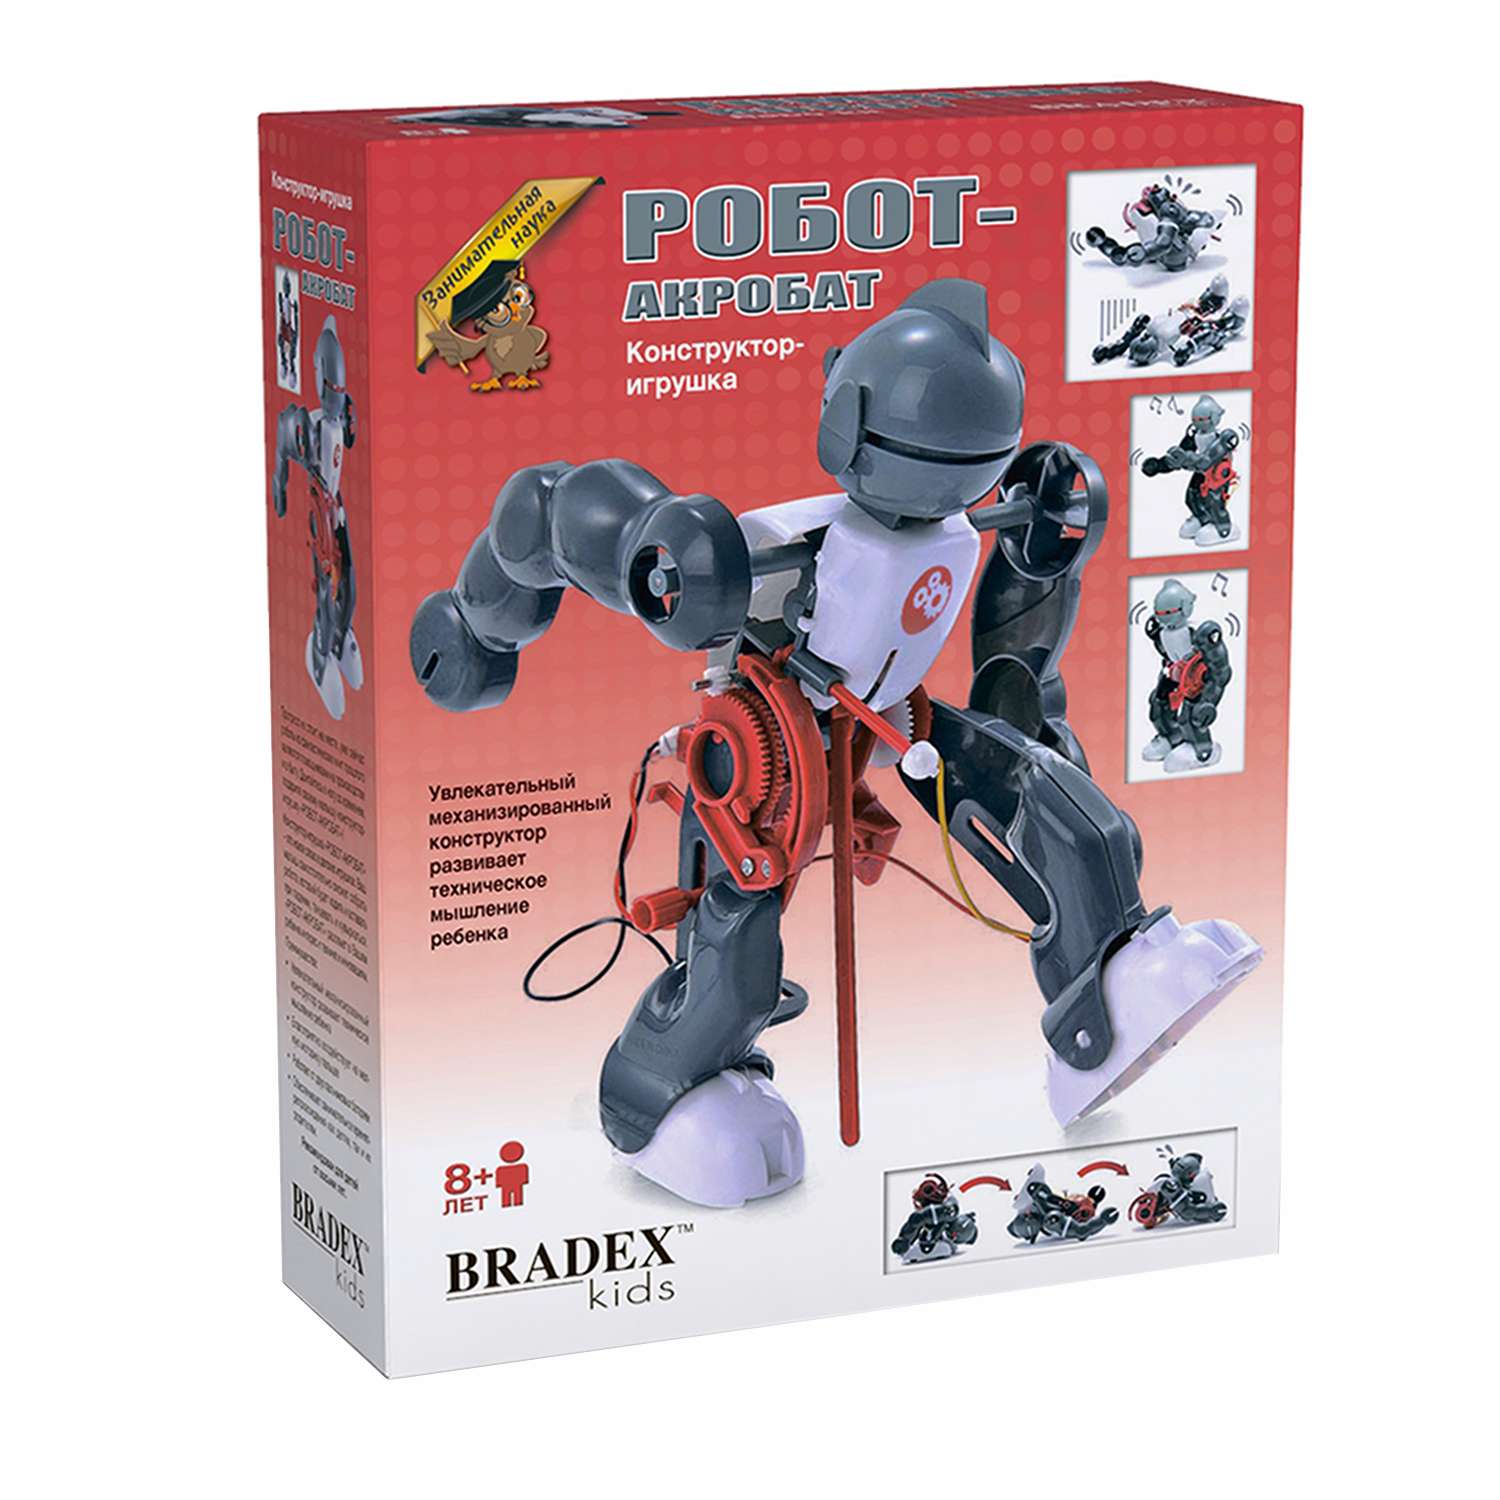 Конструктор-игрушка Bradex Робот-акробат DE 0118 - фото 2